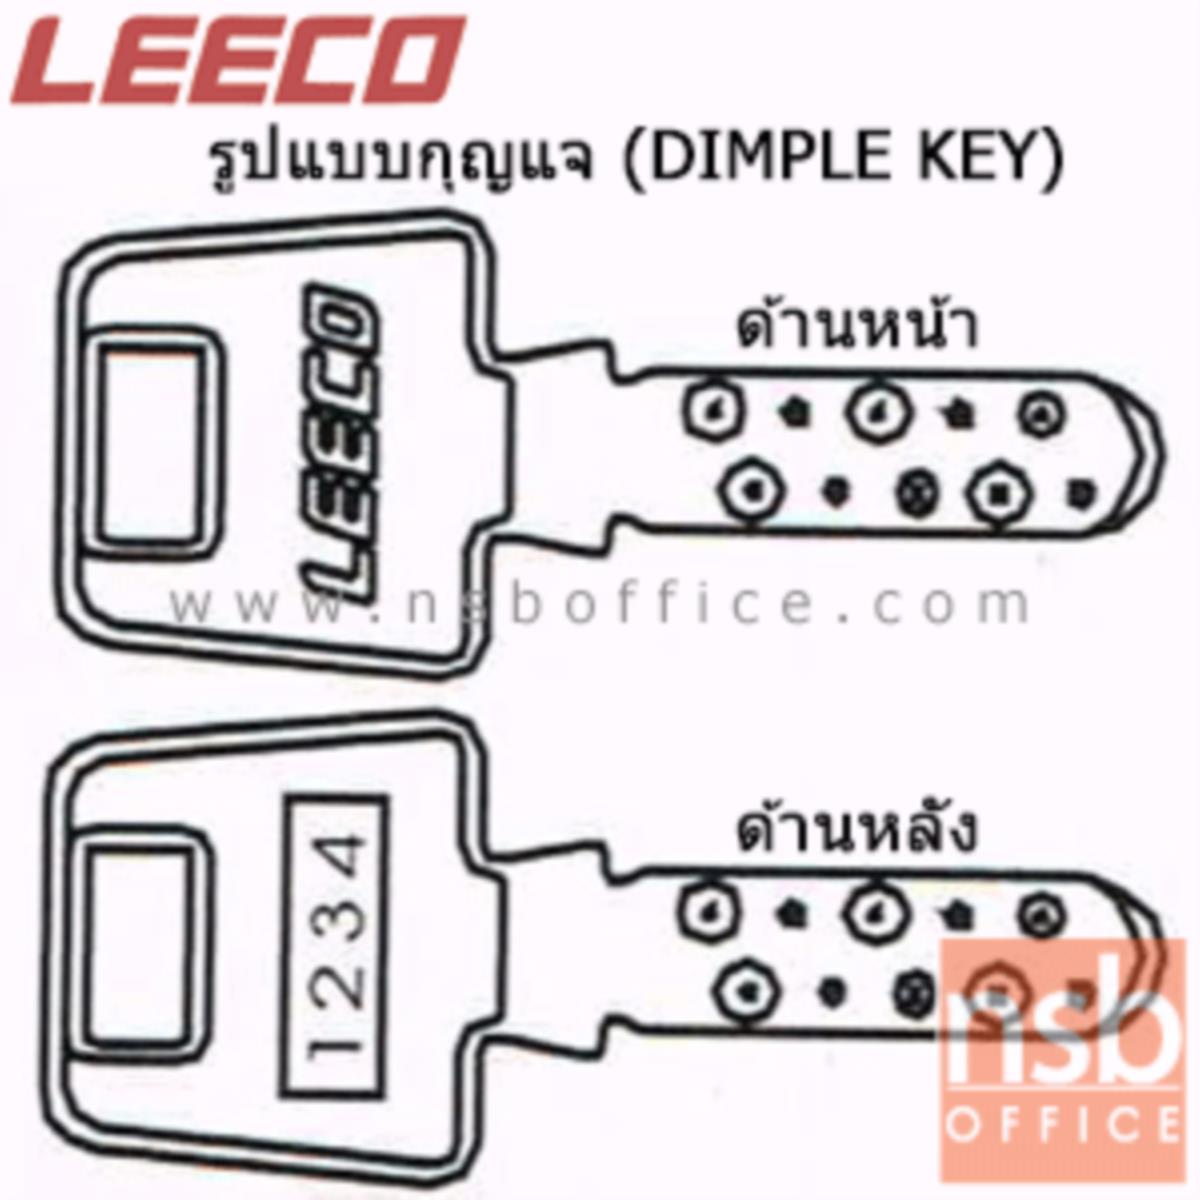 ตู้เซฟนิรภัย 380 กก. ลีโก้ รุ่น LEECO-704T มี 2 กุญแจ 1 รหัส (เปลี่ยนรหัสได้)   